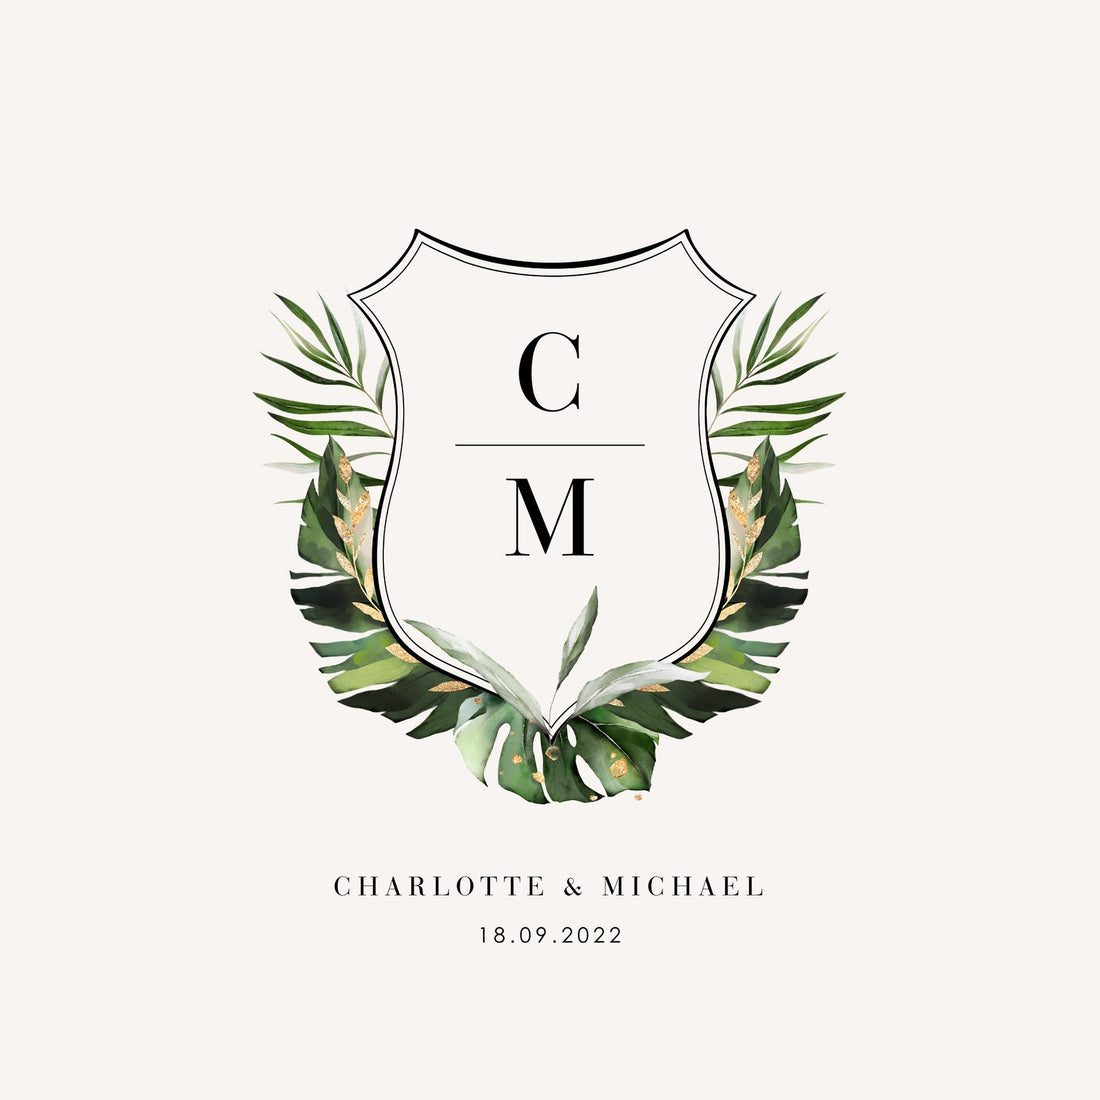 MM Monogram or MM Logo Wedding Binder